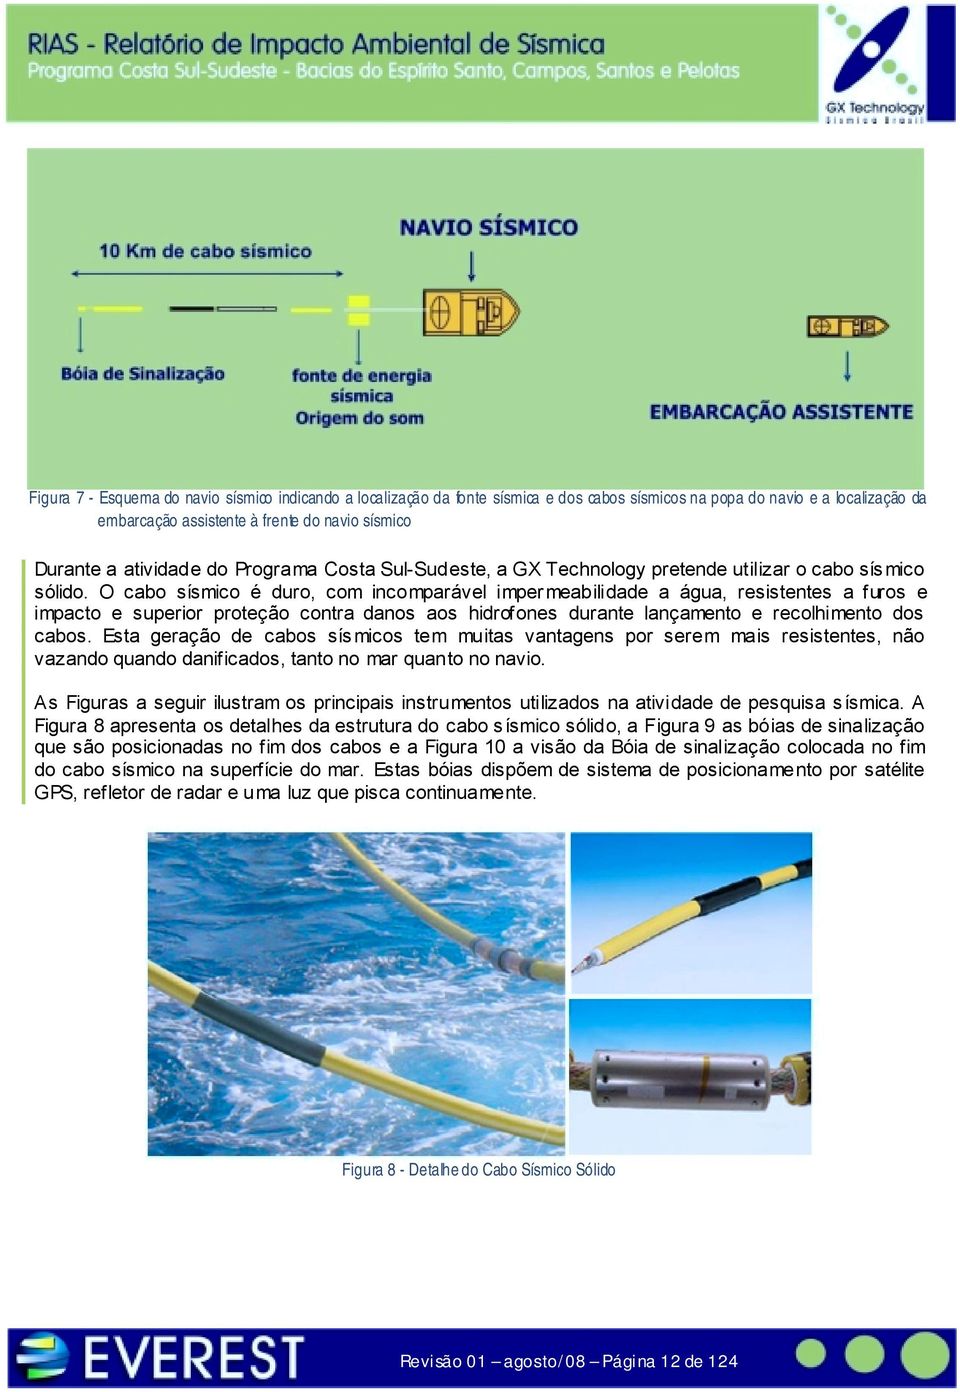 O cabo sísmico é duro, com incomparável imper meabilidade a água, resistentes a furos e impacto e superior proteção contra danos aos hidrofones durante lançamento e recolhimento dos cabos.